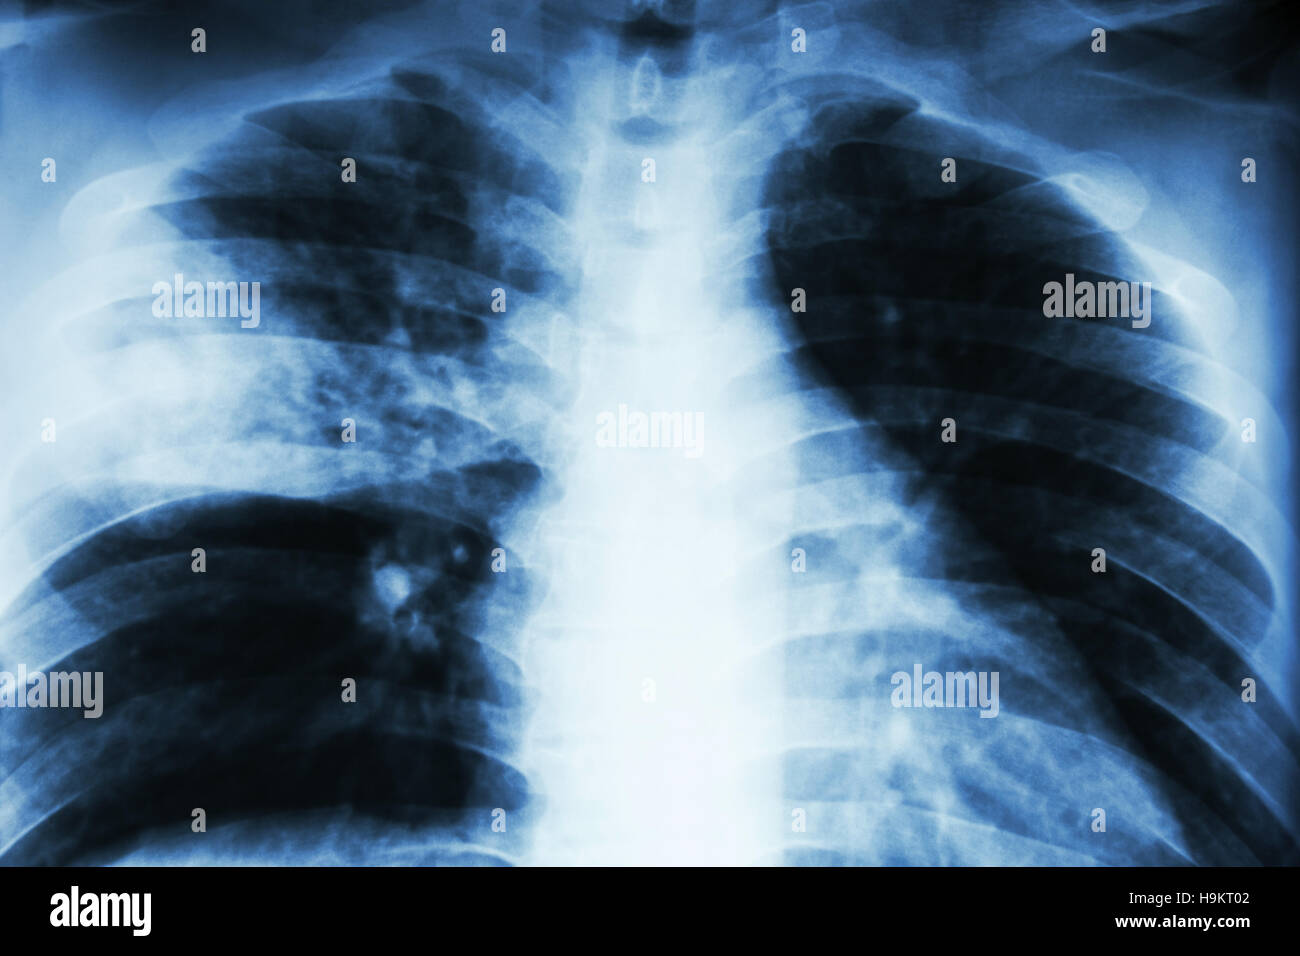 Lobar polmonite . film i raggi x al torace mostra infiltrazione alveolare a destra lobo centrale a causa di infezione da tubercolosi . Foto Stock